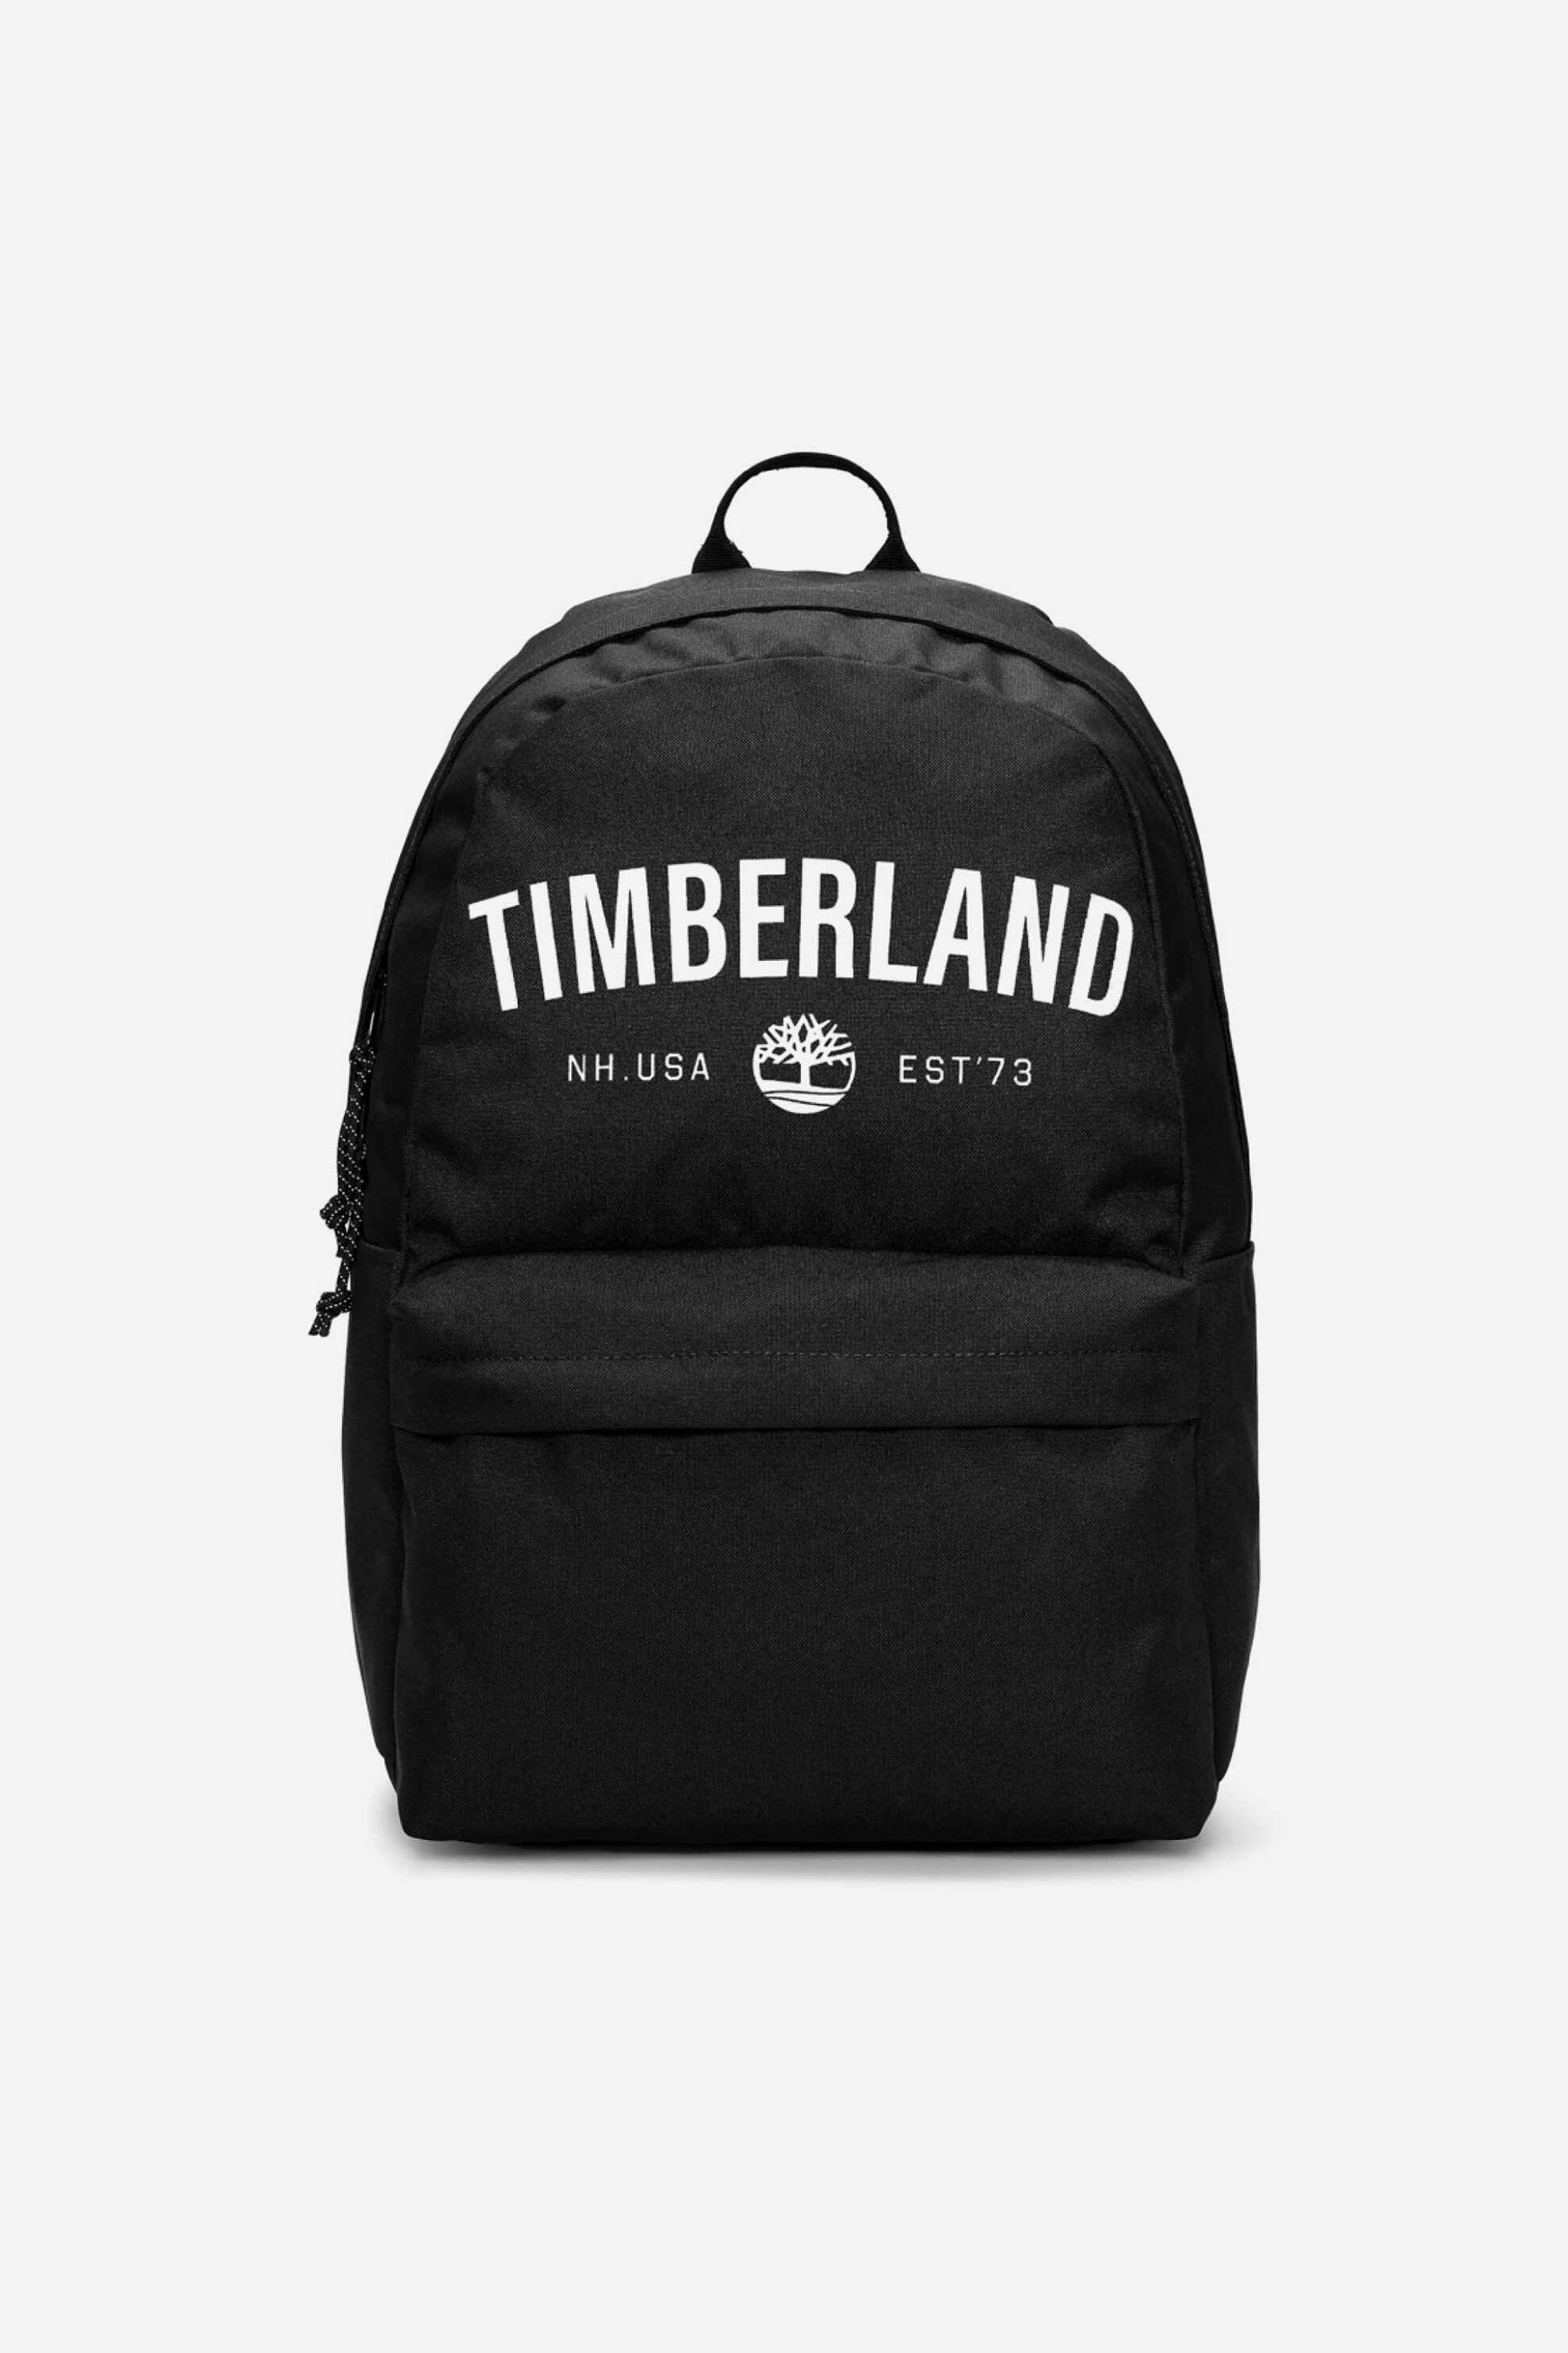 Ανδρική Μόδα > Ανδρικές Τσάντες > Ανδρικά Σακίδια & Backpacks Timberland unisex backpack με logo print - TB0A5SSBN921 Μαύρο